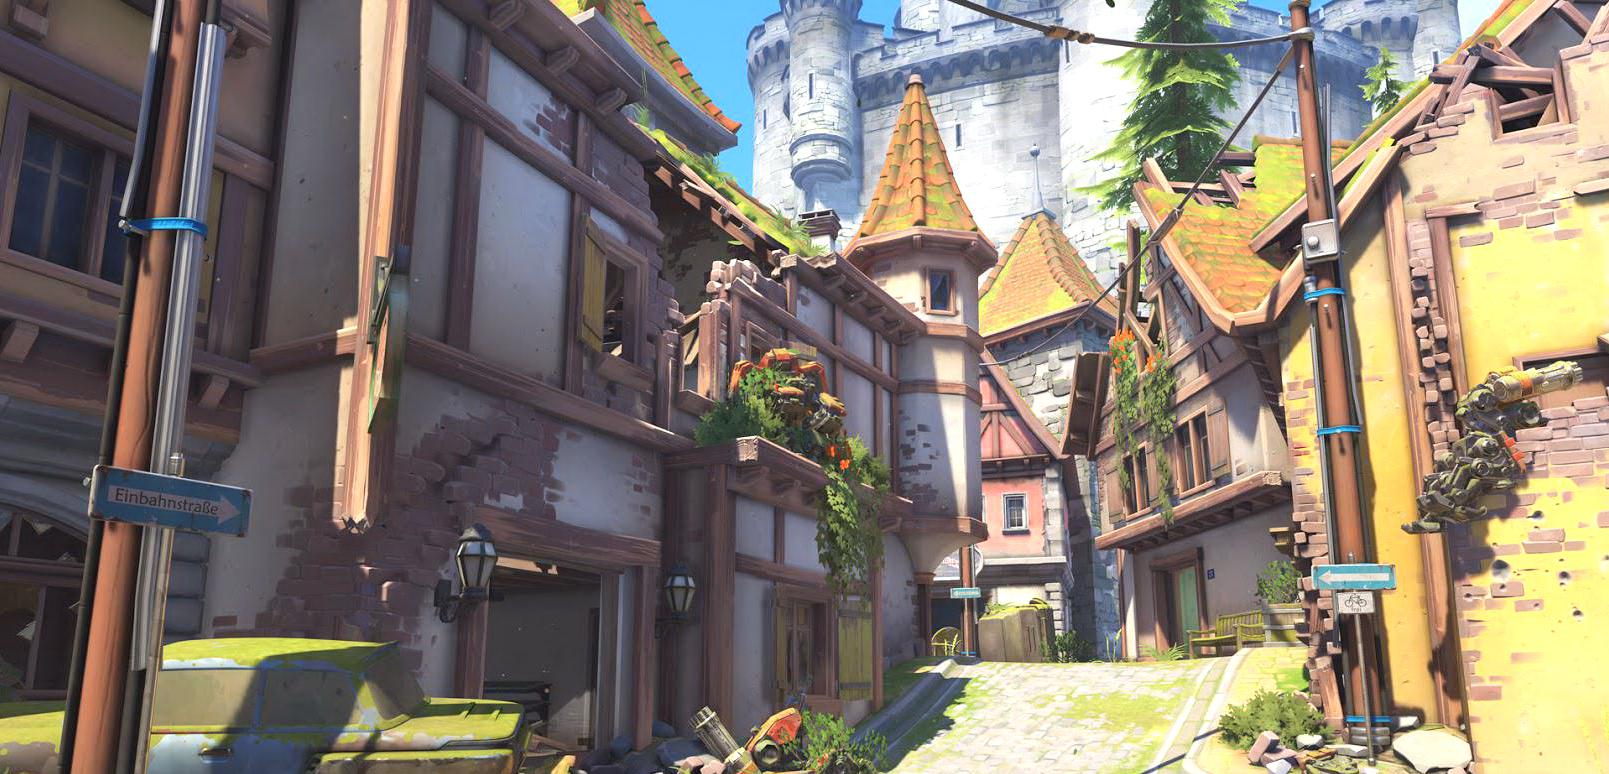 Rozróba w murach wielkiego zamku - mamy pierwszy gameplay z nowej mapy Overwatch